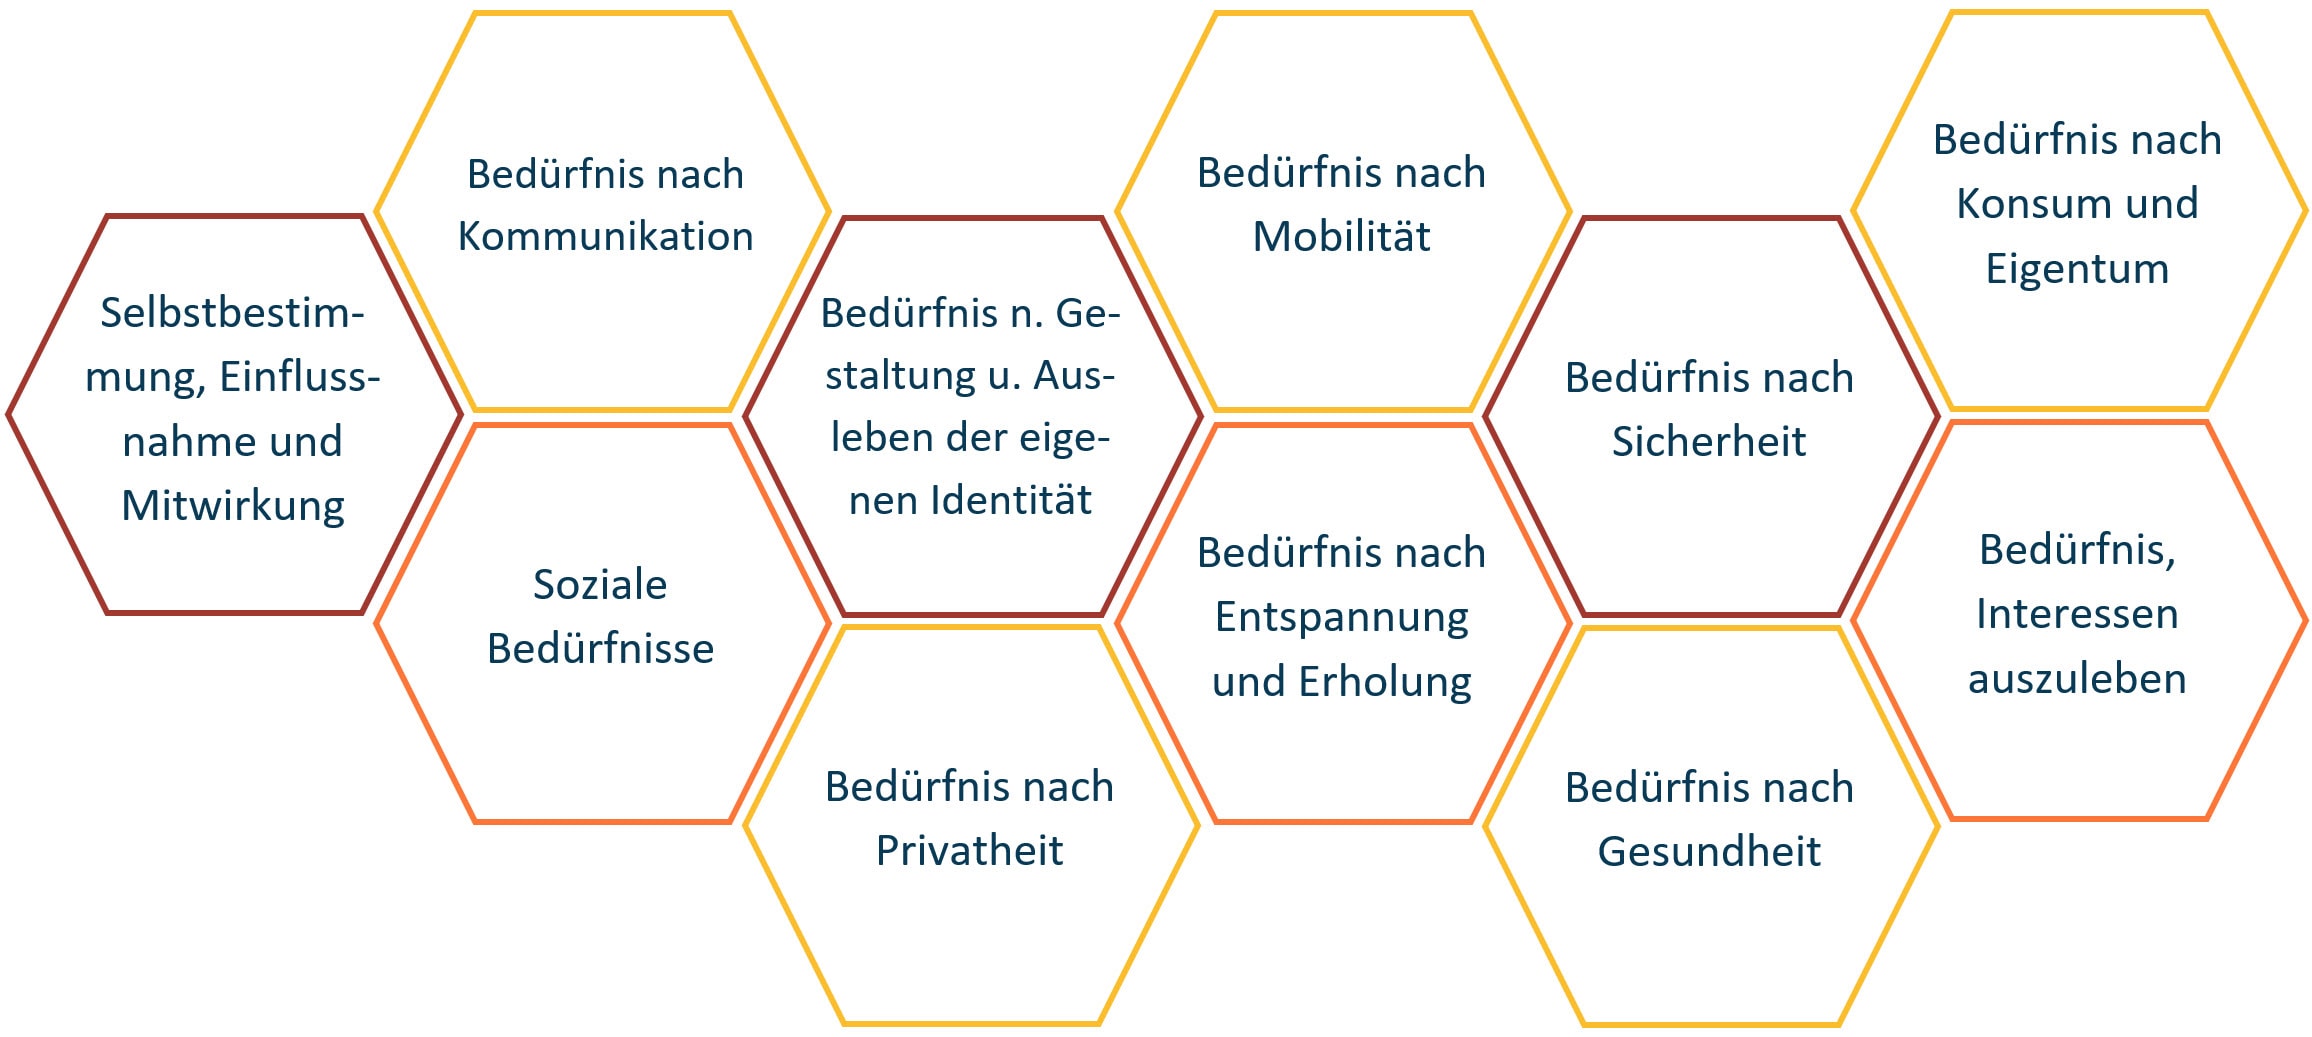 Flussdiagramm in deutscher Sprache, das verschiedene menschliche Bedürfnisse wie Kommunikation, Mobilität, Konsum, Privatsphäre und Gesundheit abbildet, verbunden durch Linien in sechseckigen Formen.